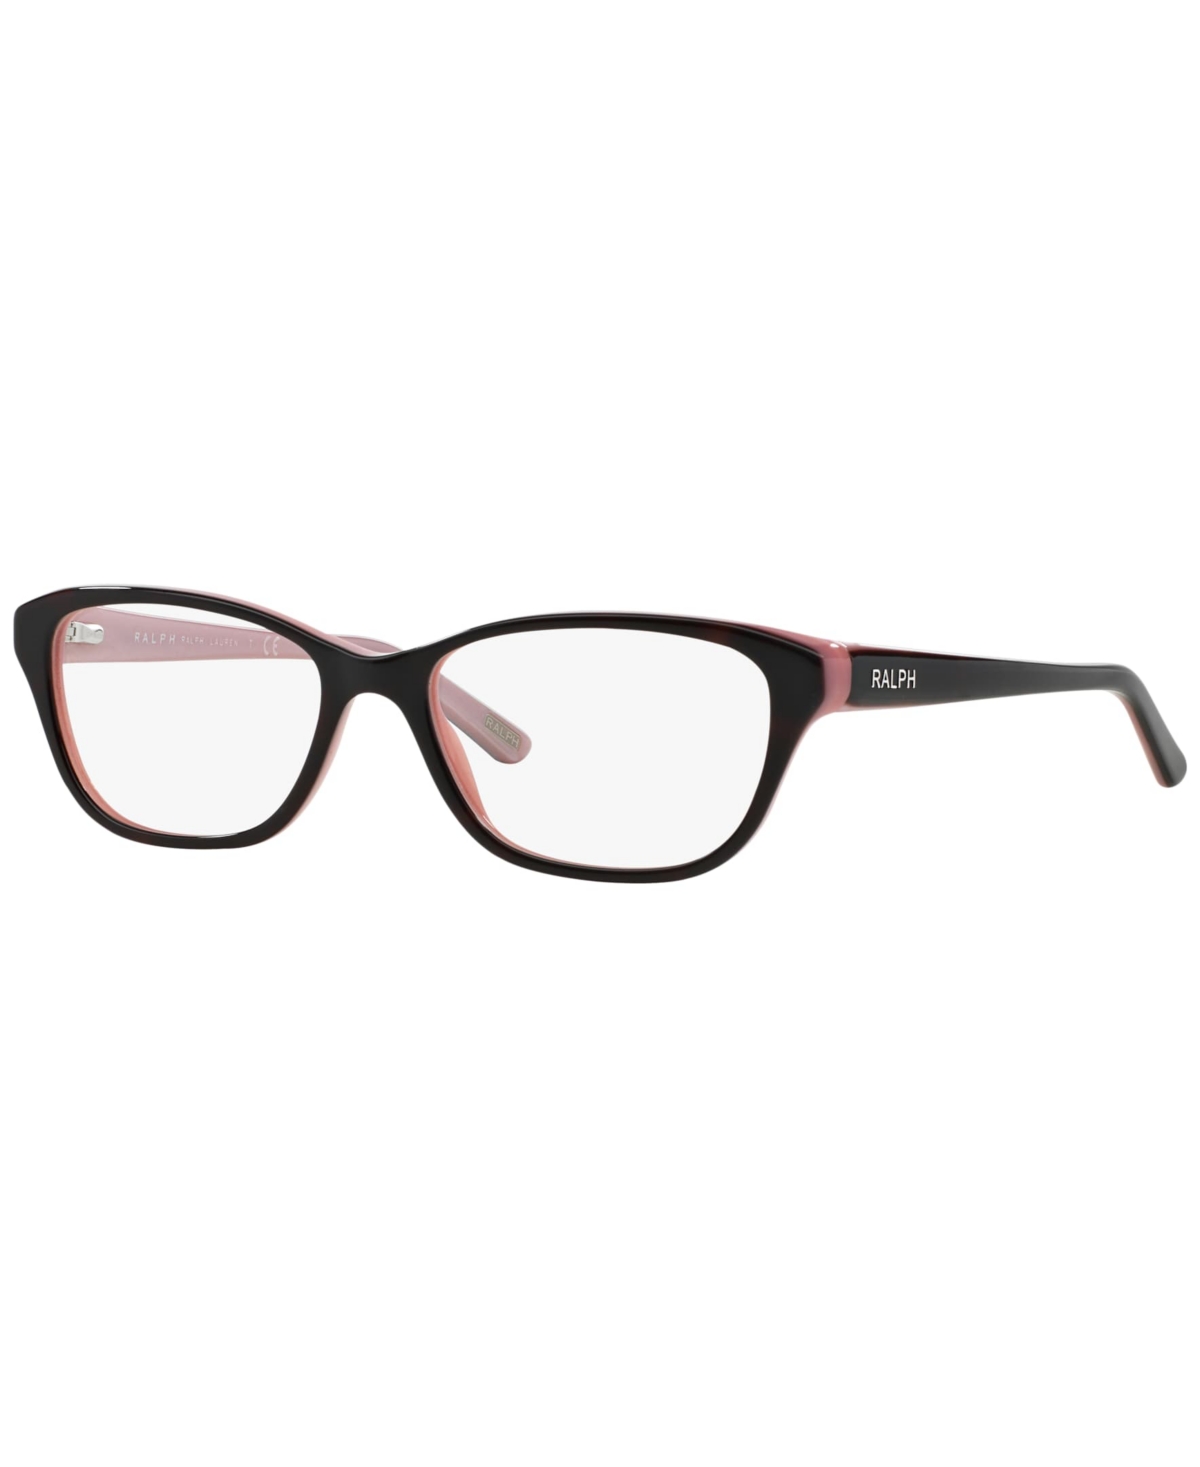 Women's Eyeglasses, RA7020 - Shiny Dark Havana On Pink